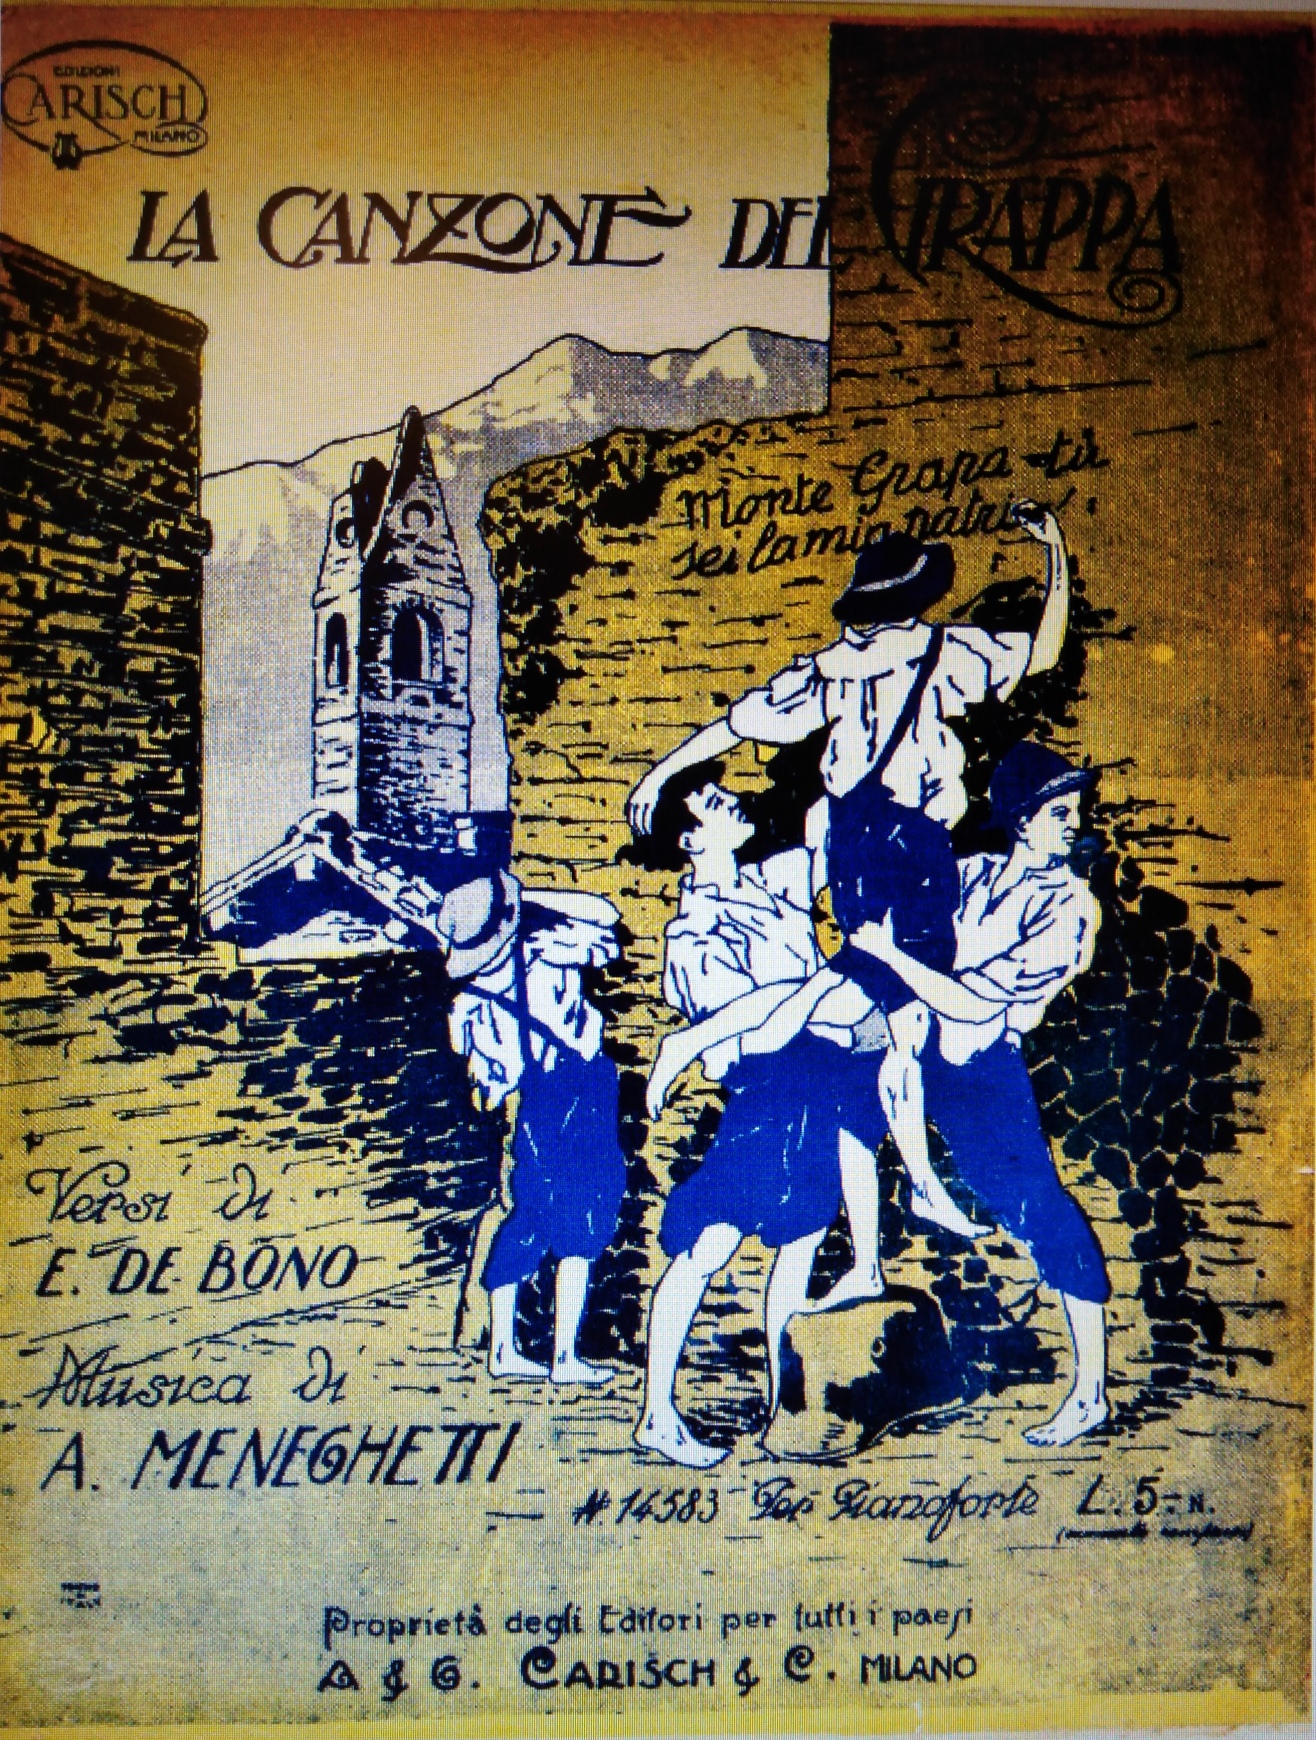 Copertina del fascicolo la Canzone del Grappa, Edizioni CarischMilano, 1920 circa. Coll. G. Ceraso